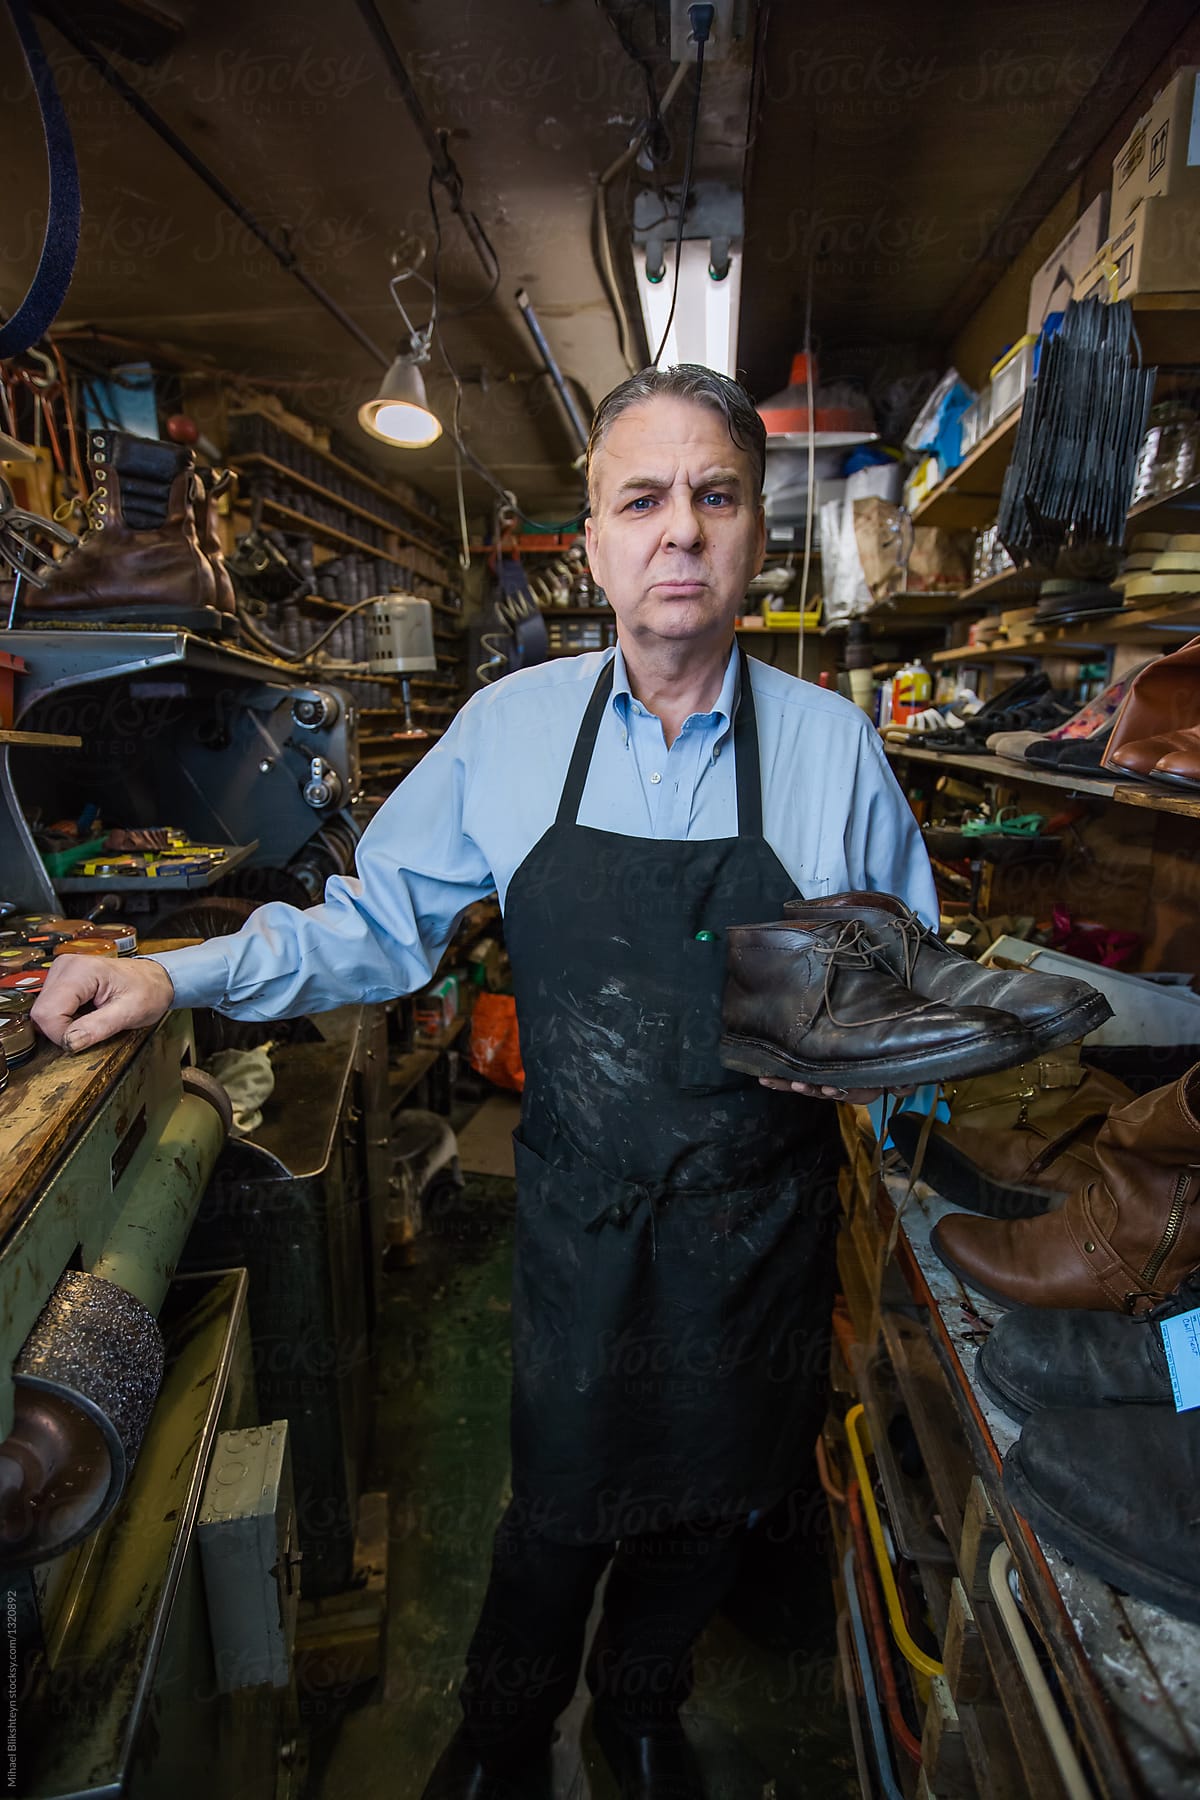 Stern-looking cobbler in his shoe repair shop